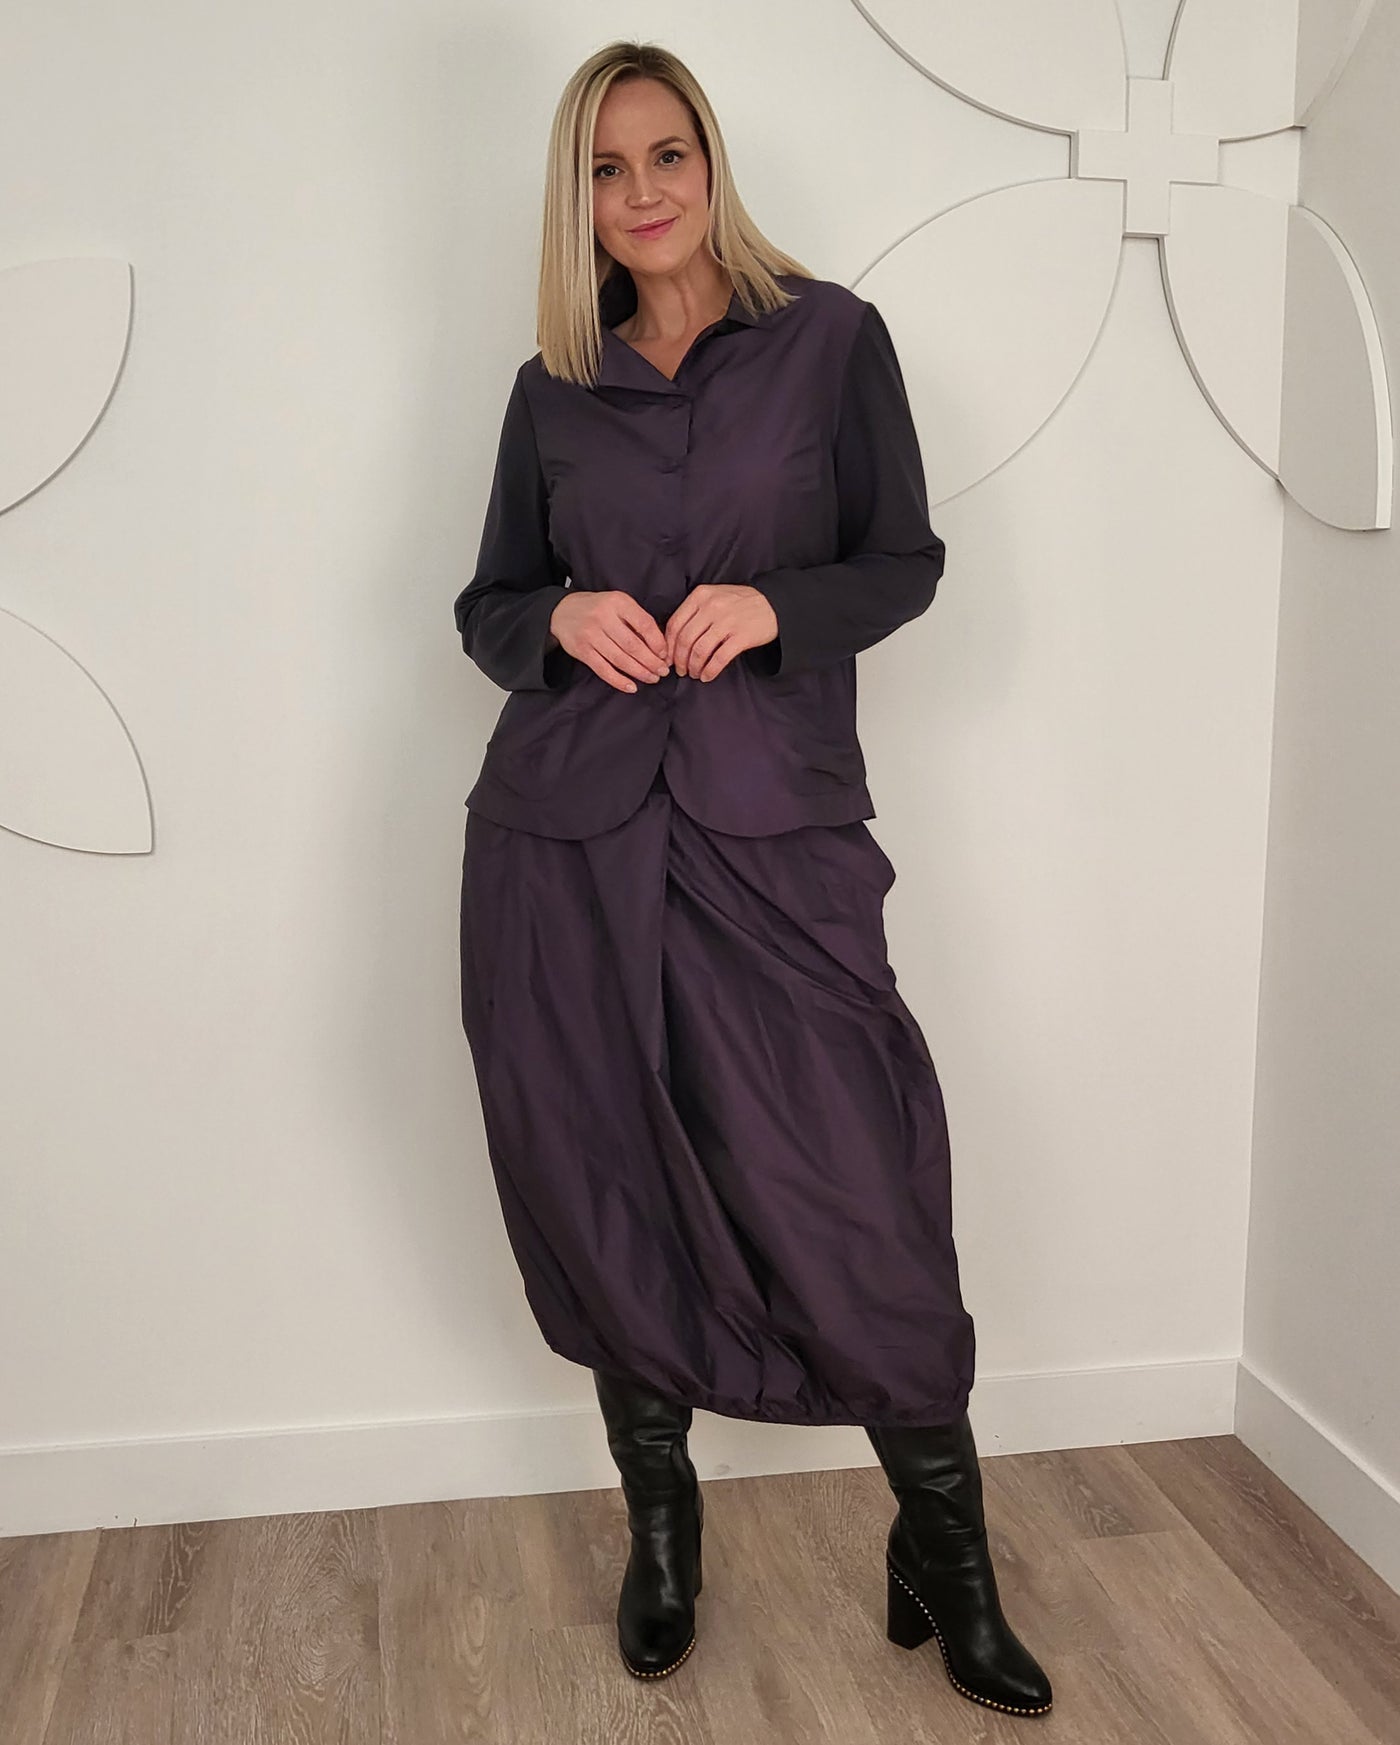 Toni T. Iridescent Taffeta Balloon Skirt w. Jersey waistband in Violet